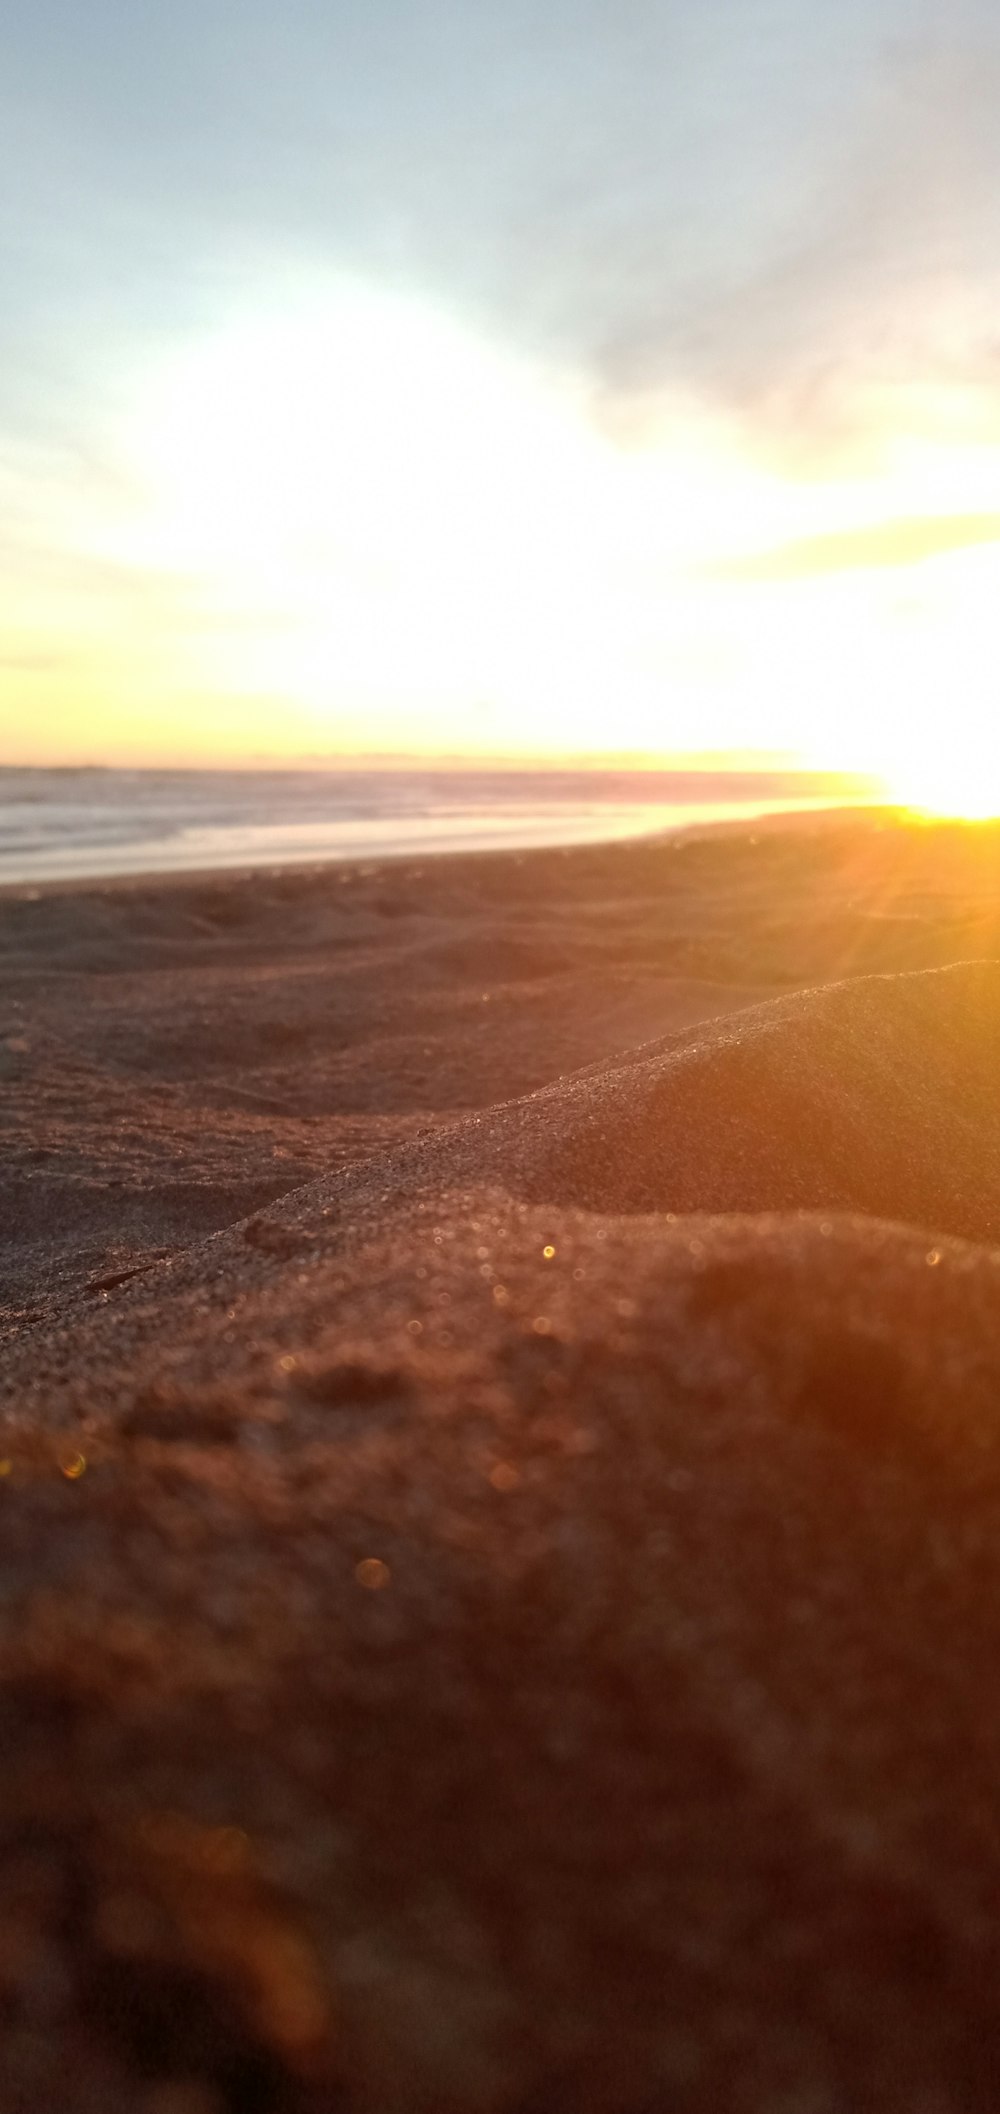 une planche de surf posée au sommet d’une plage de sable